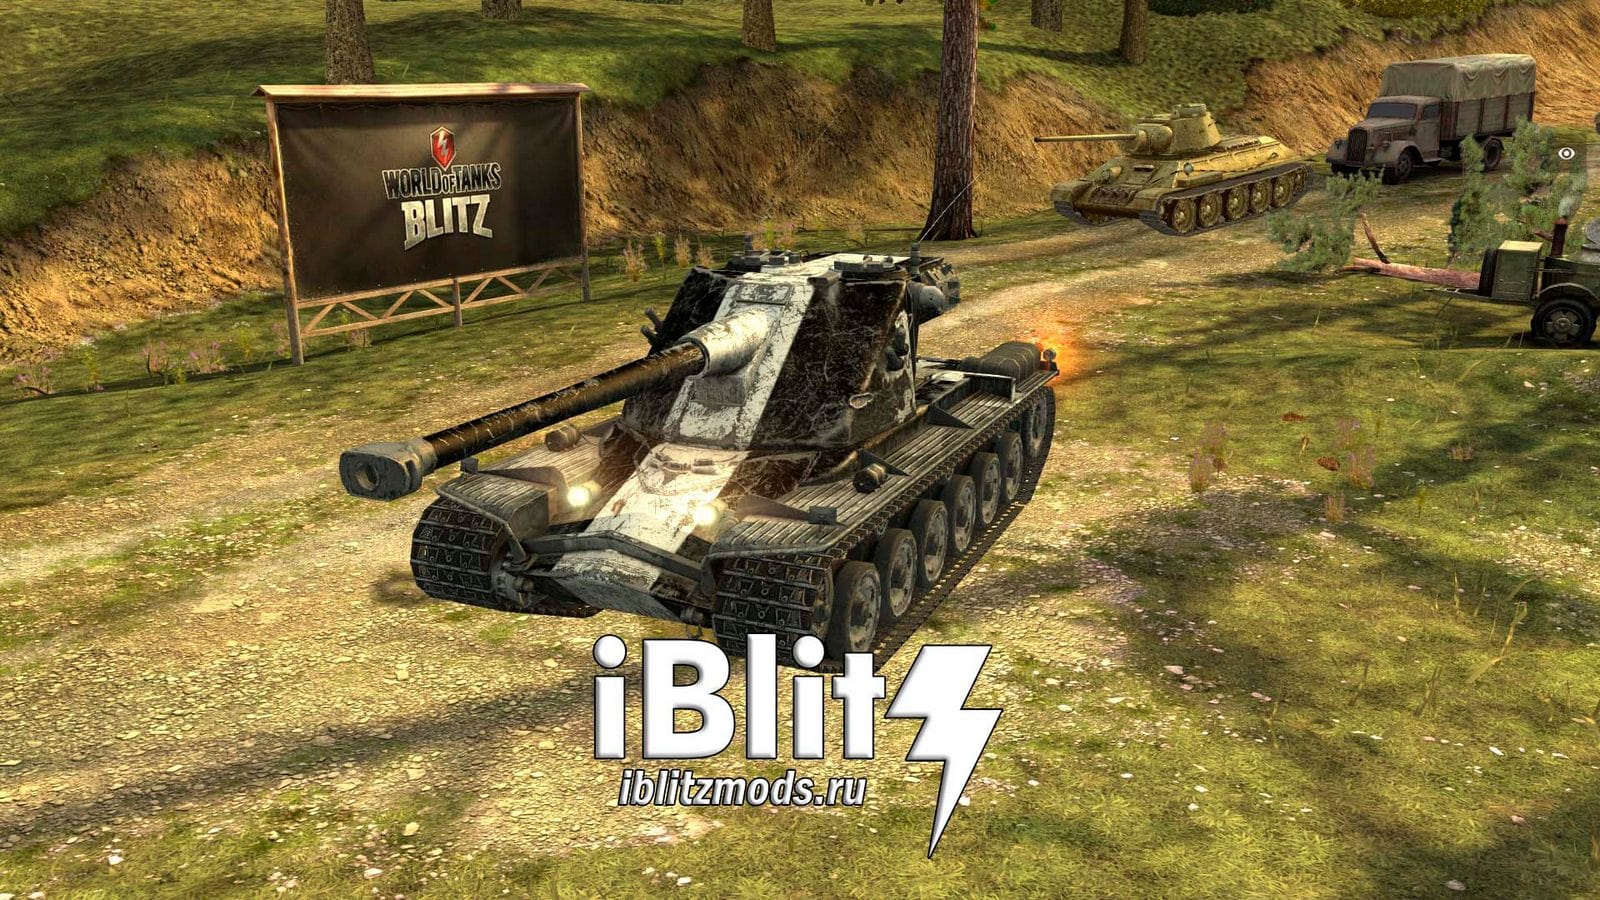 Скачать бесплатно шкурку на Кранвагн (Kranvagn Black Sky) для WoT Blitz. Моды на шкурки для вот блиц. Модификации World of Tanks Blitz.